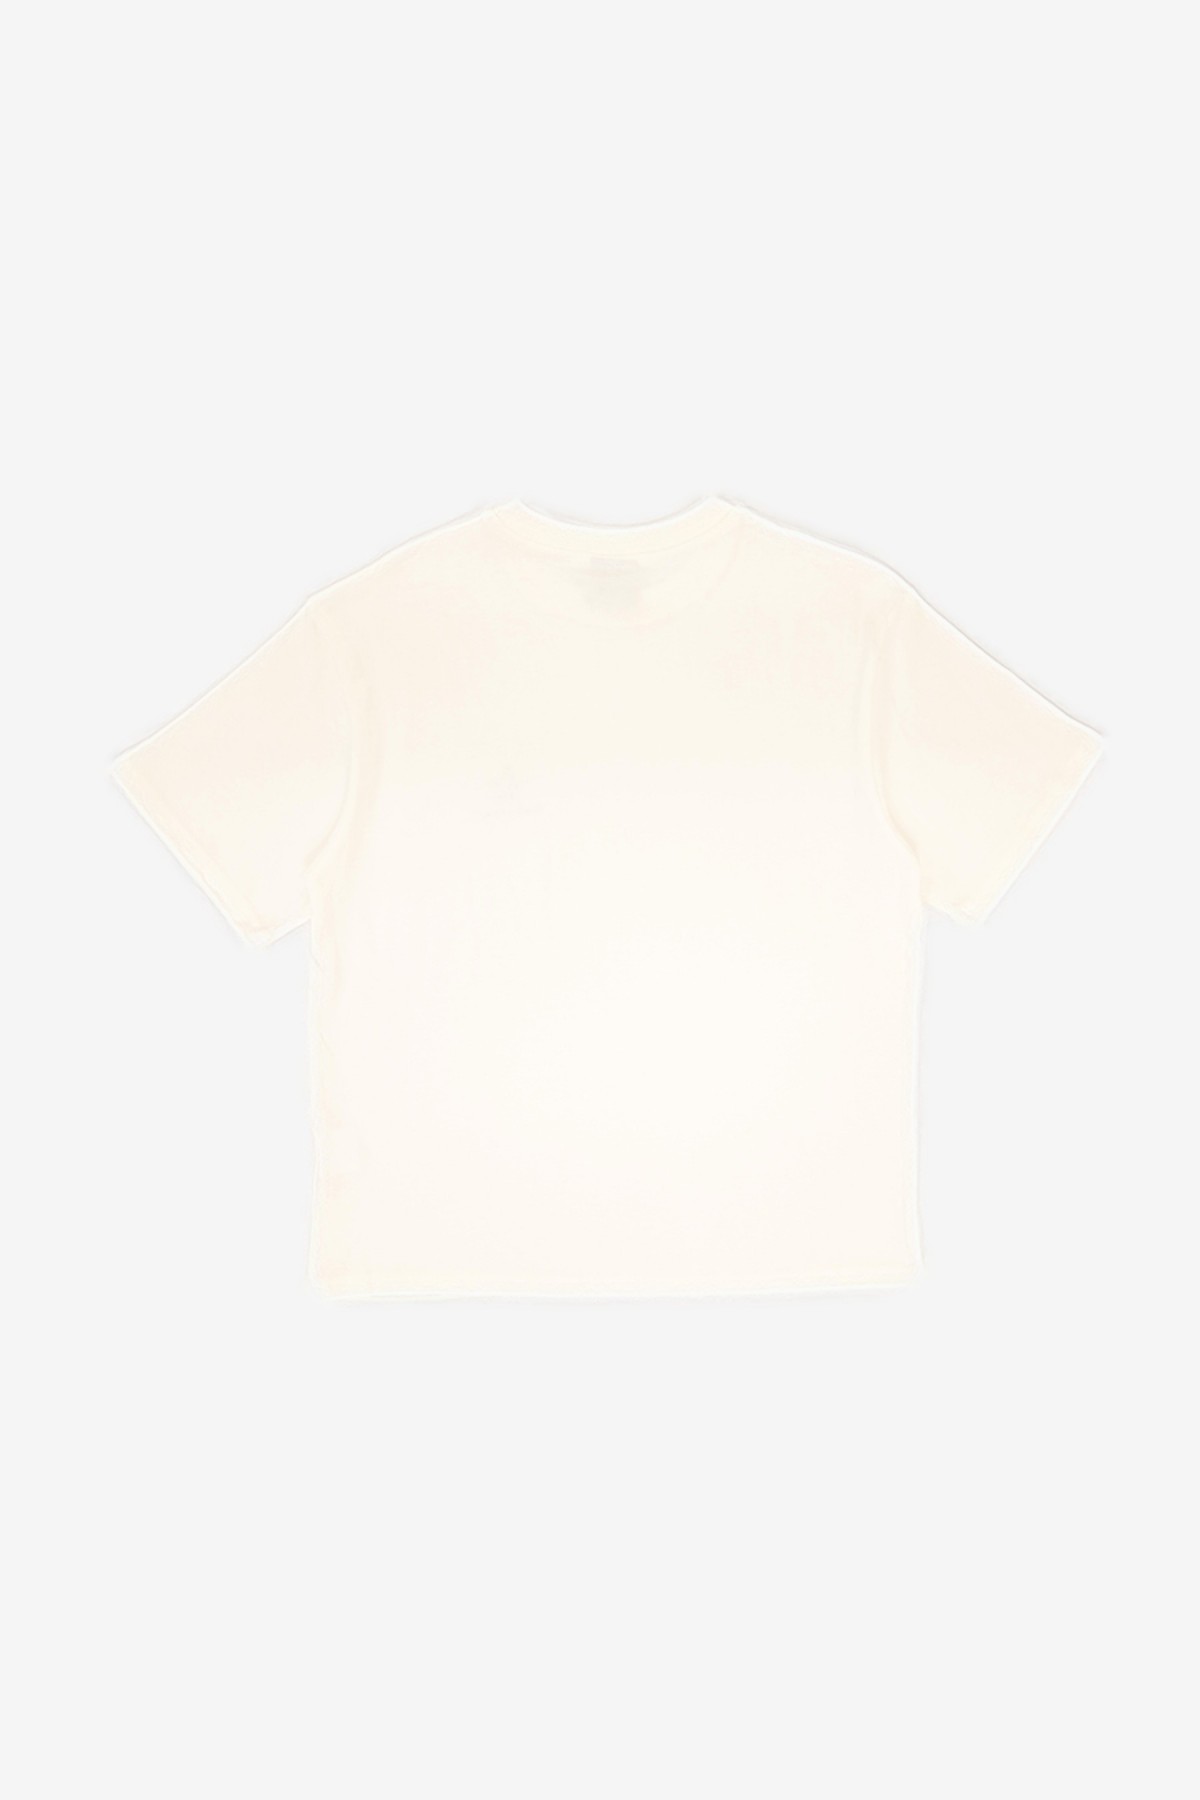 Bram's Fruit Outline Lemon T-Shirt in White